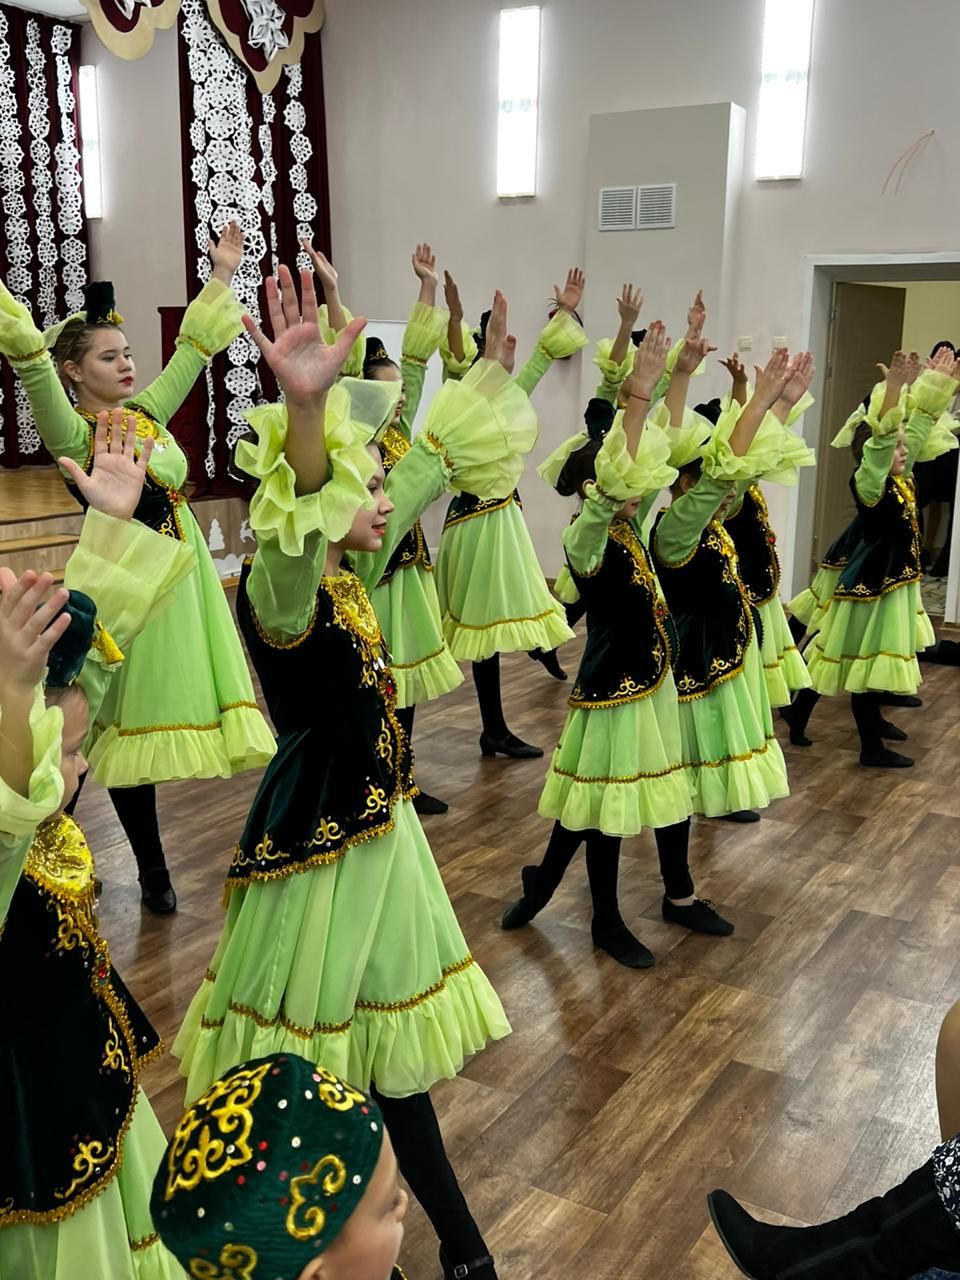 Сокуровская средняя школа выиграла и реализовала грант в рамках Года родных языков и народного единства